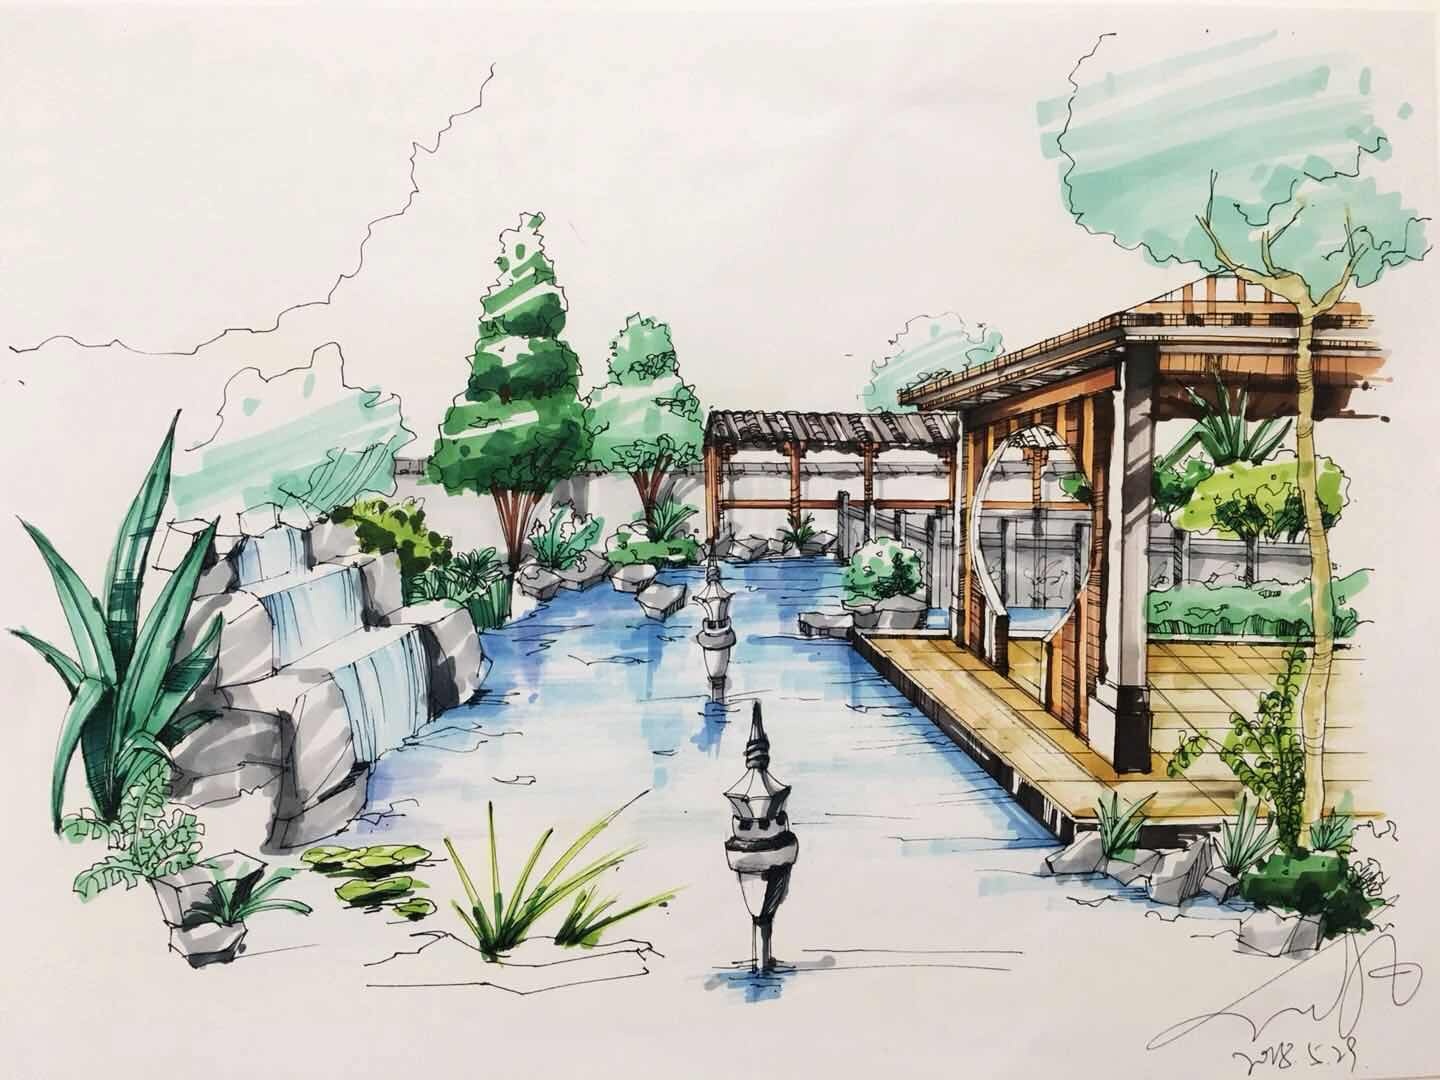 【青岛手绘】公园凉亭景观设计手绘 - 风景园林手绘表现